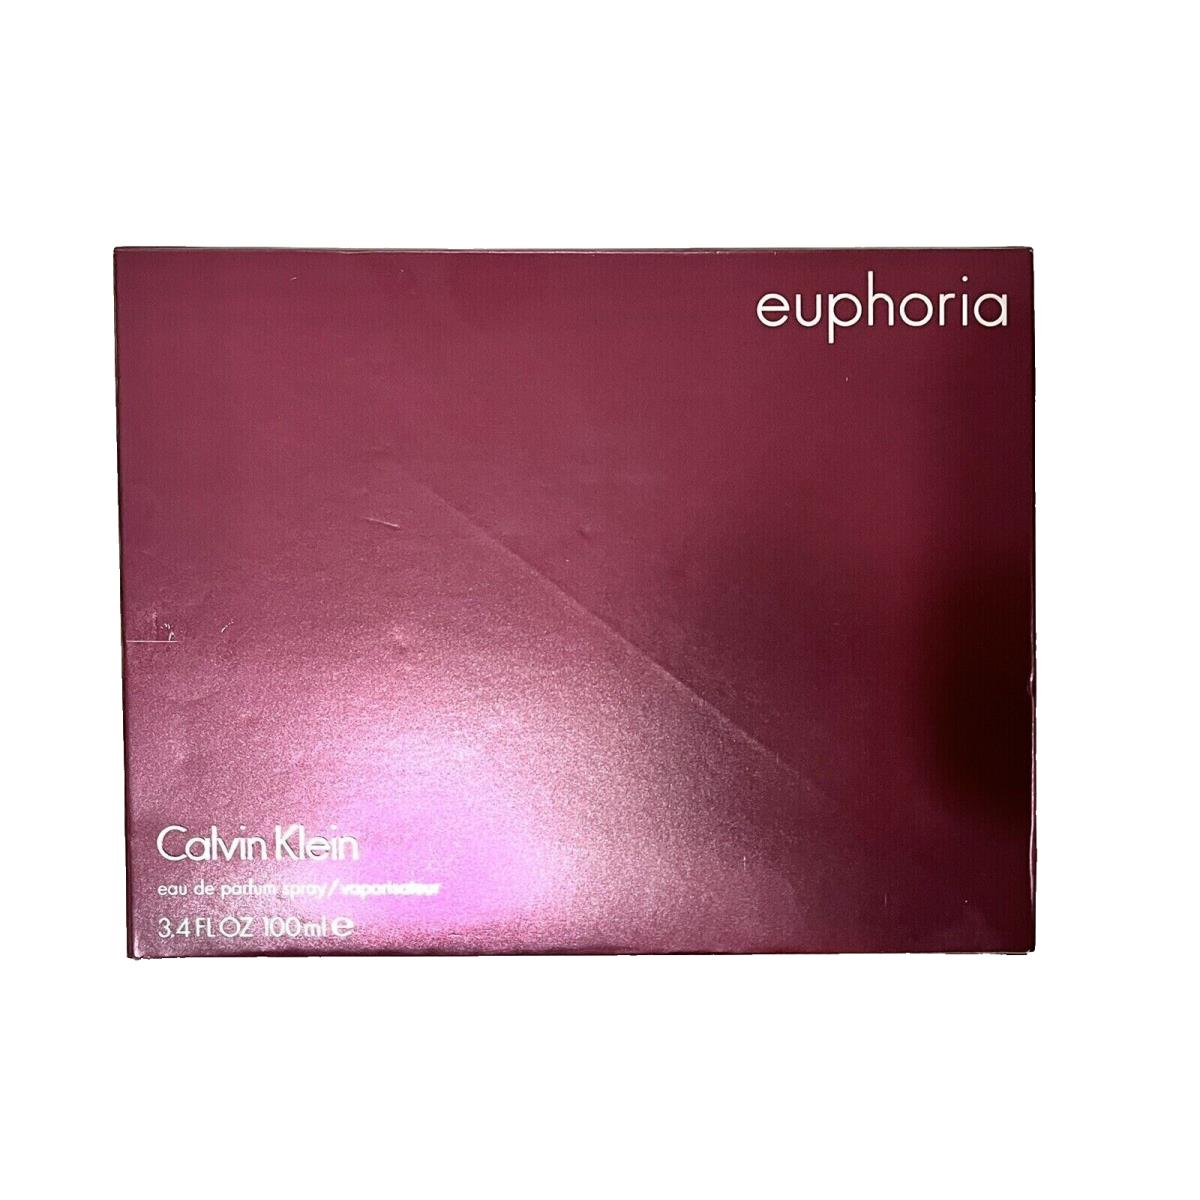 Calvin Klein Euphoria Eau DE Parfum Spray 3.4oz. - Box